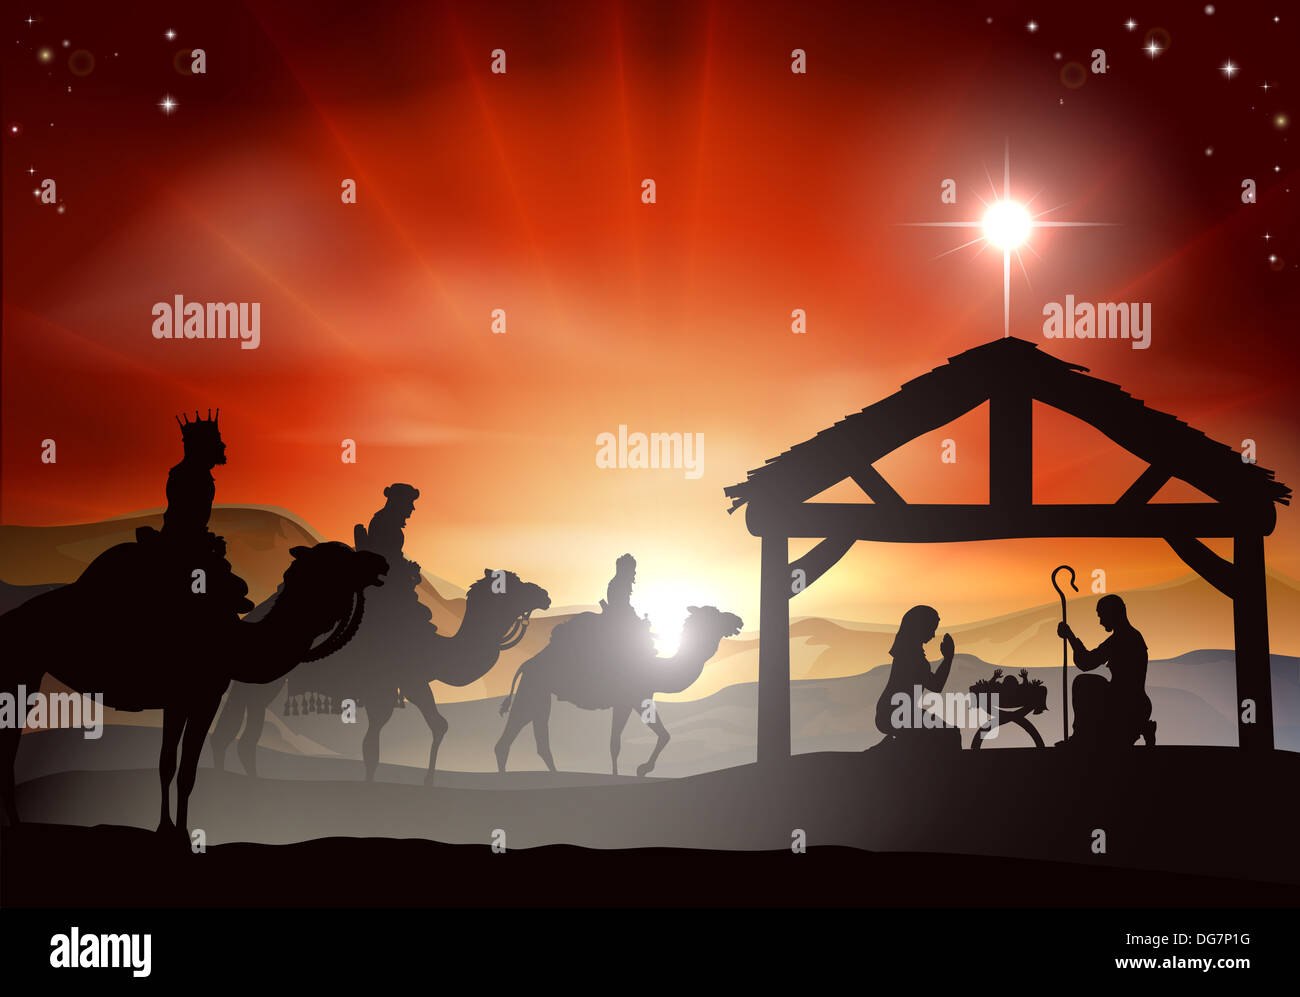 Crèche de Noël avec l'enfant Jésus dans la crèche en silhouette, trois sages ou rois et étoile de Bethléem Banque D'Images